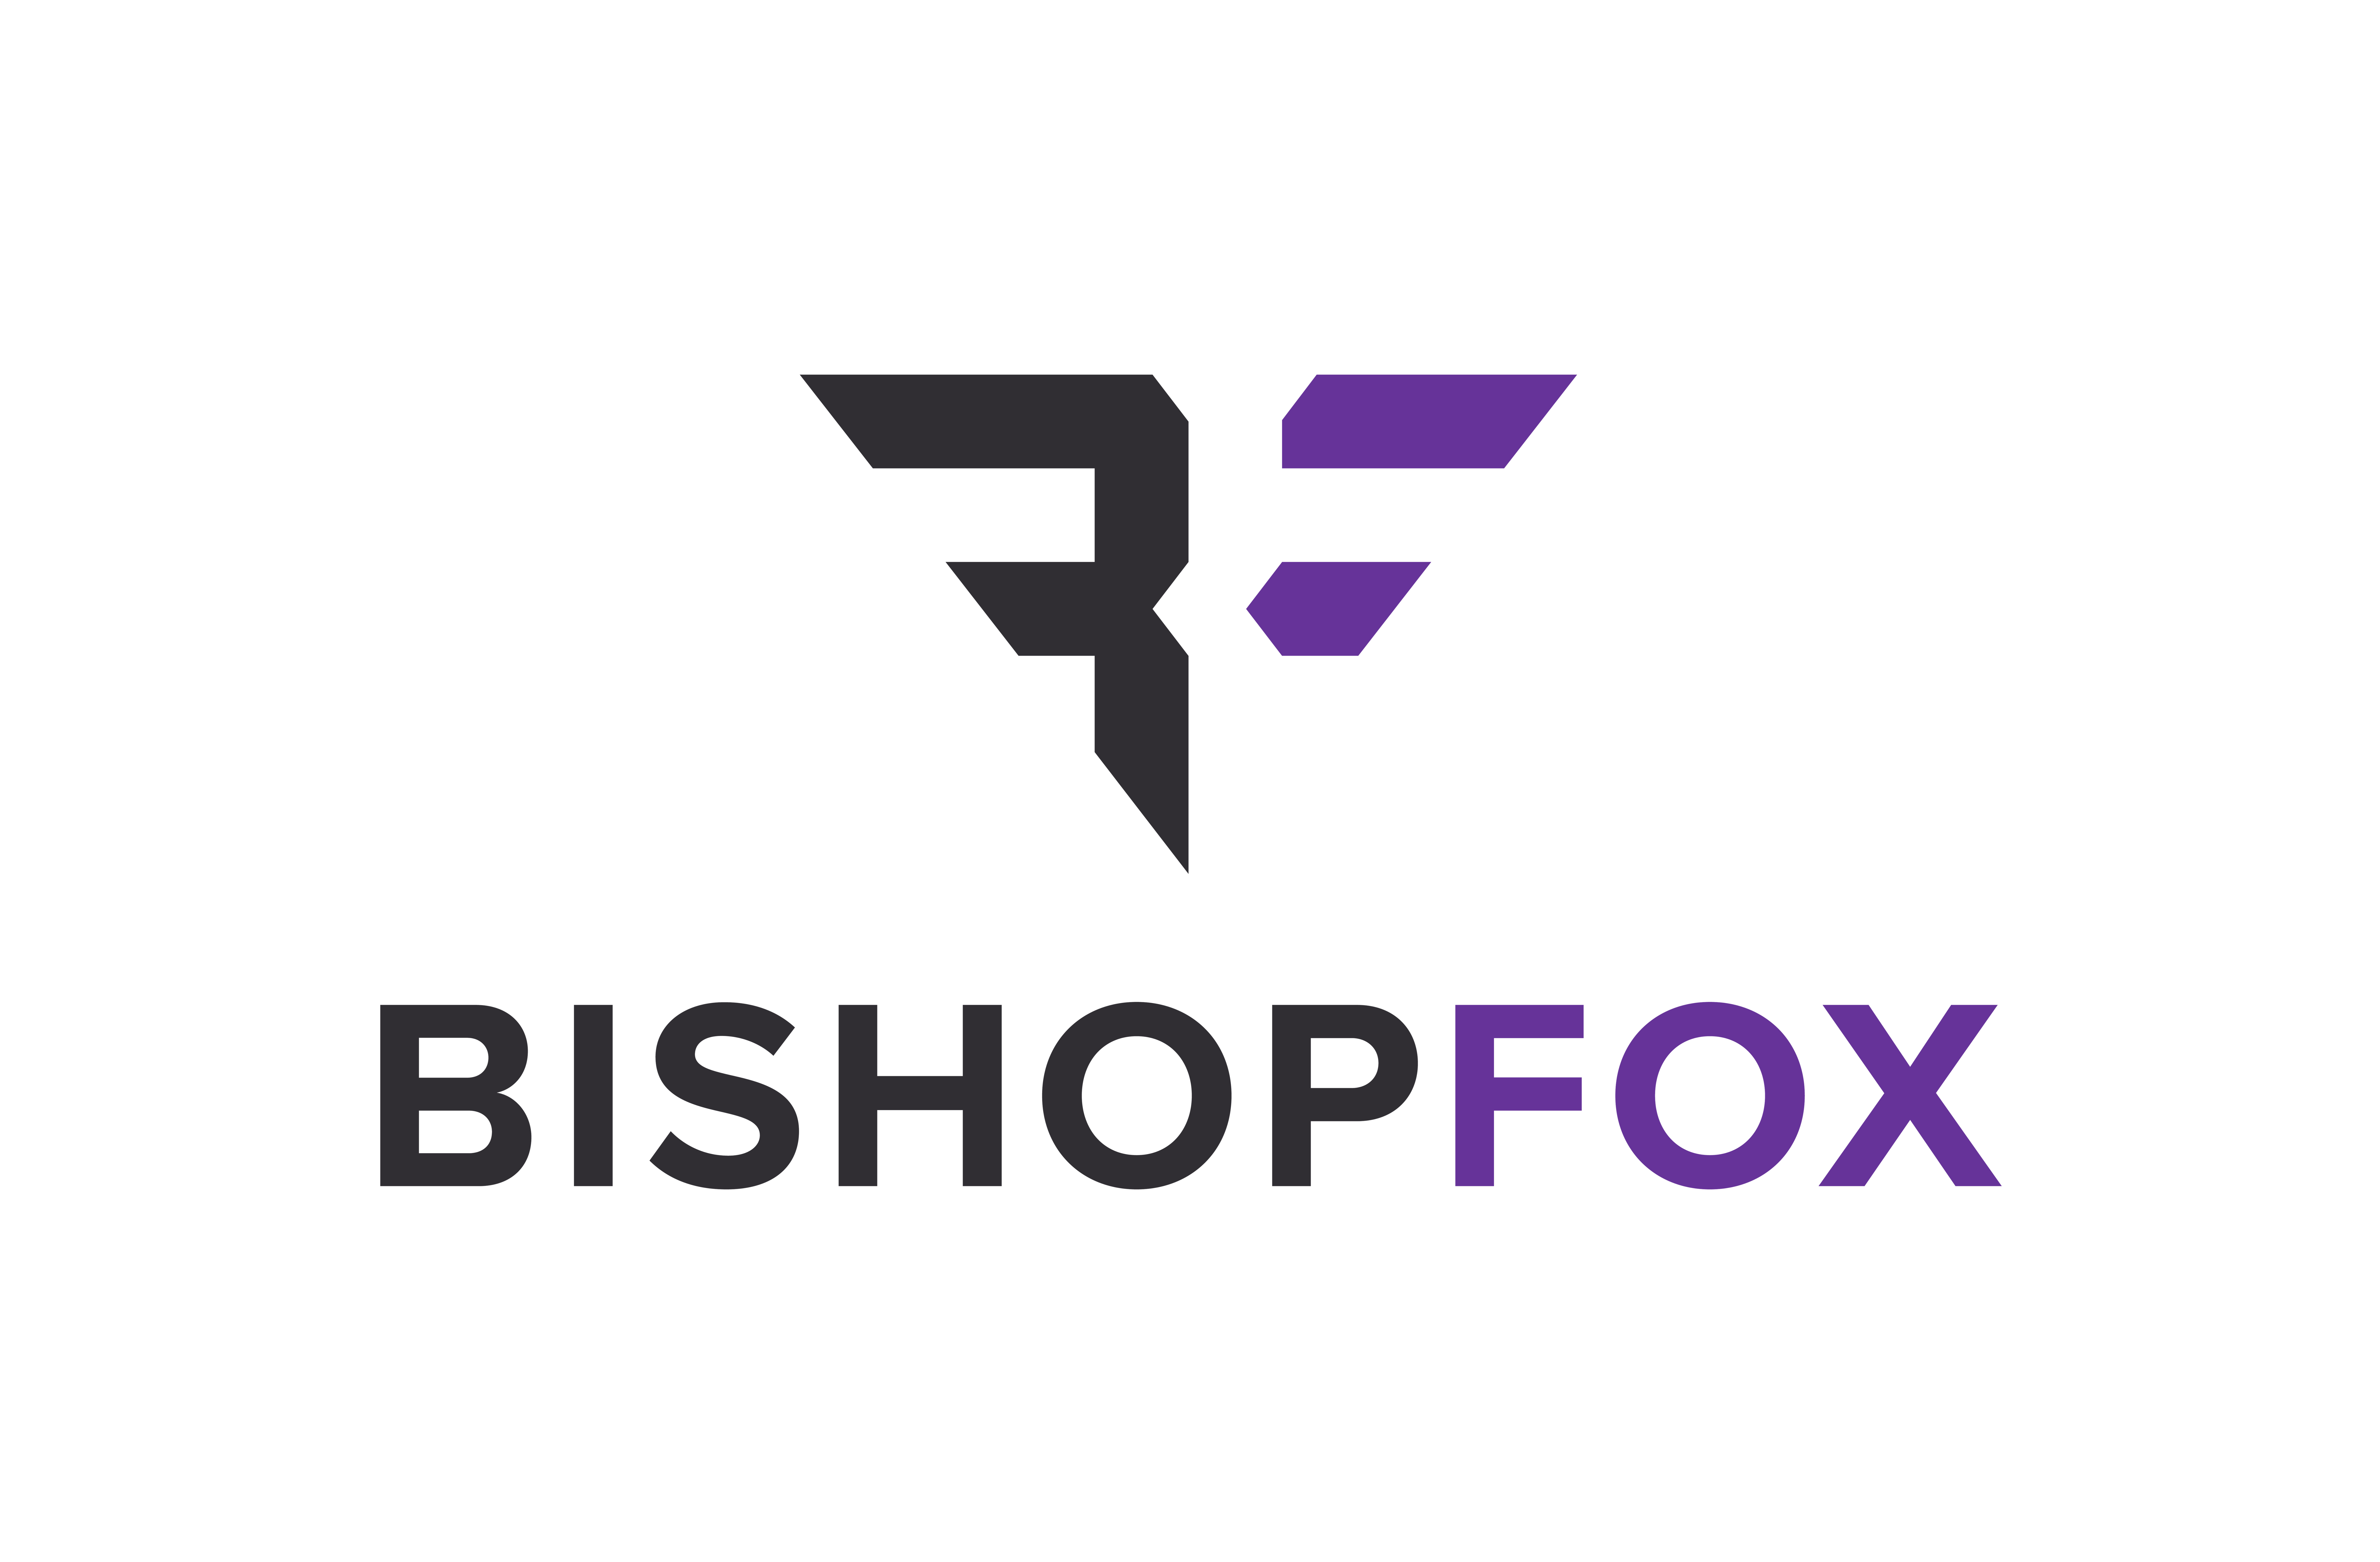 BishopFox_Primary_Stacked_Logo_w_Padding.png